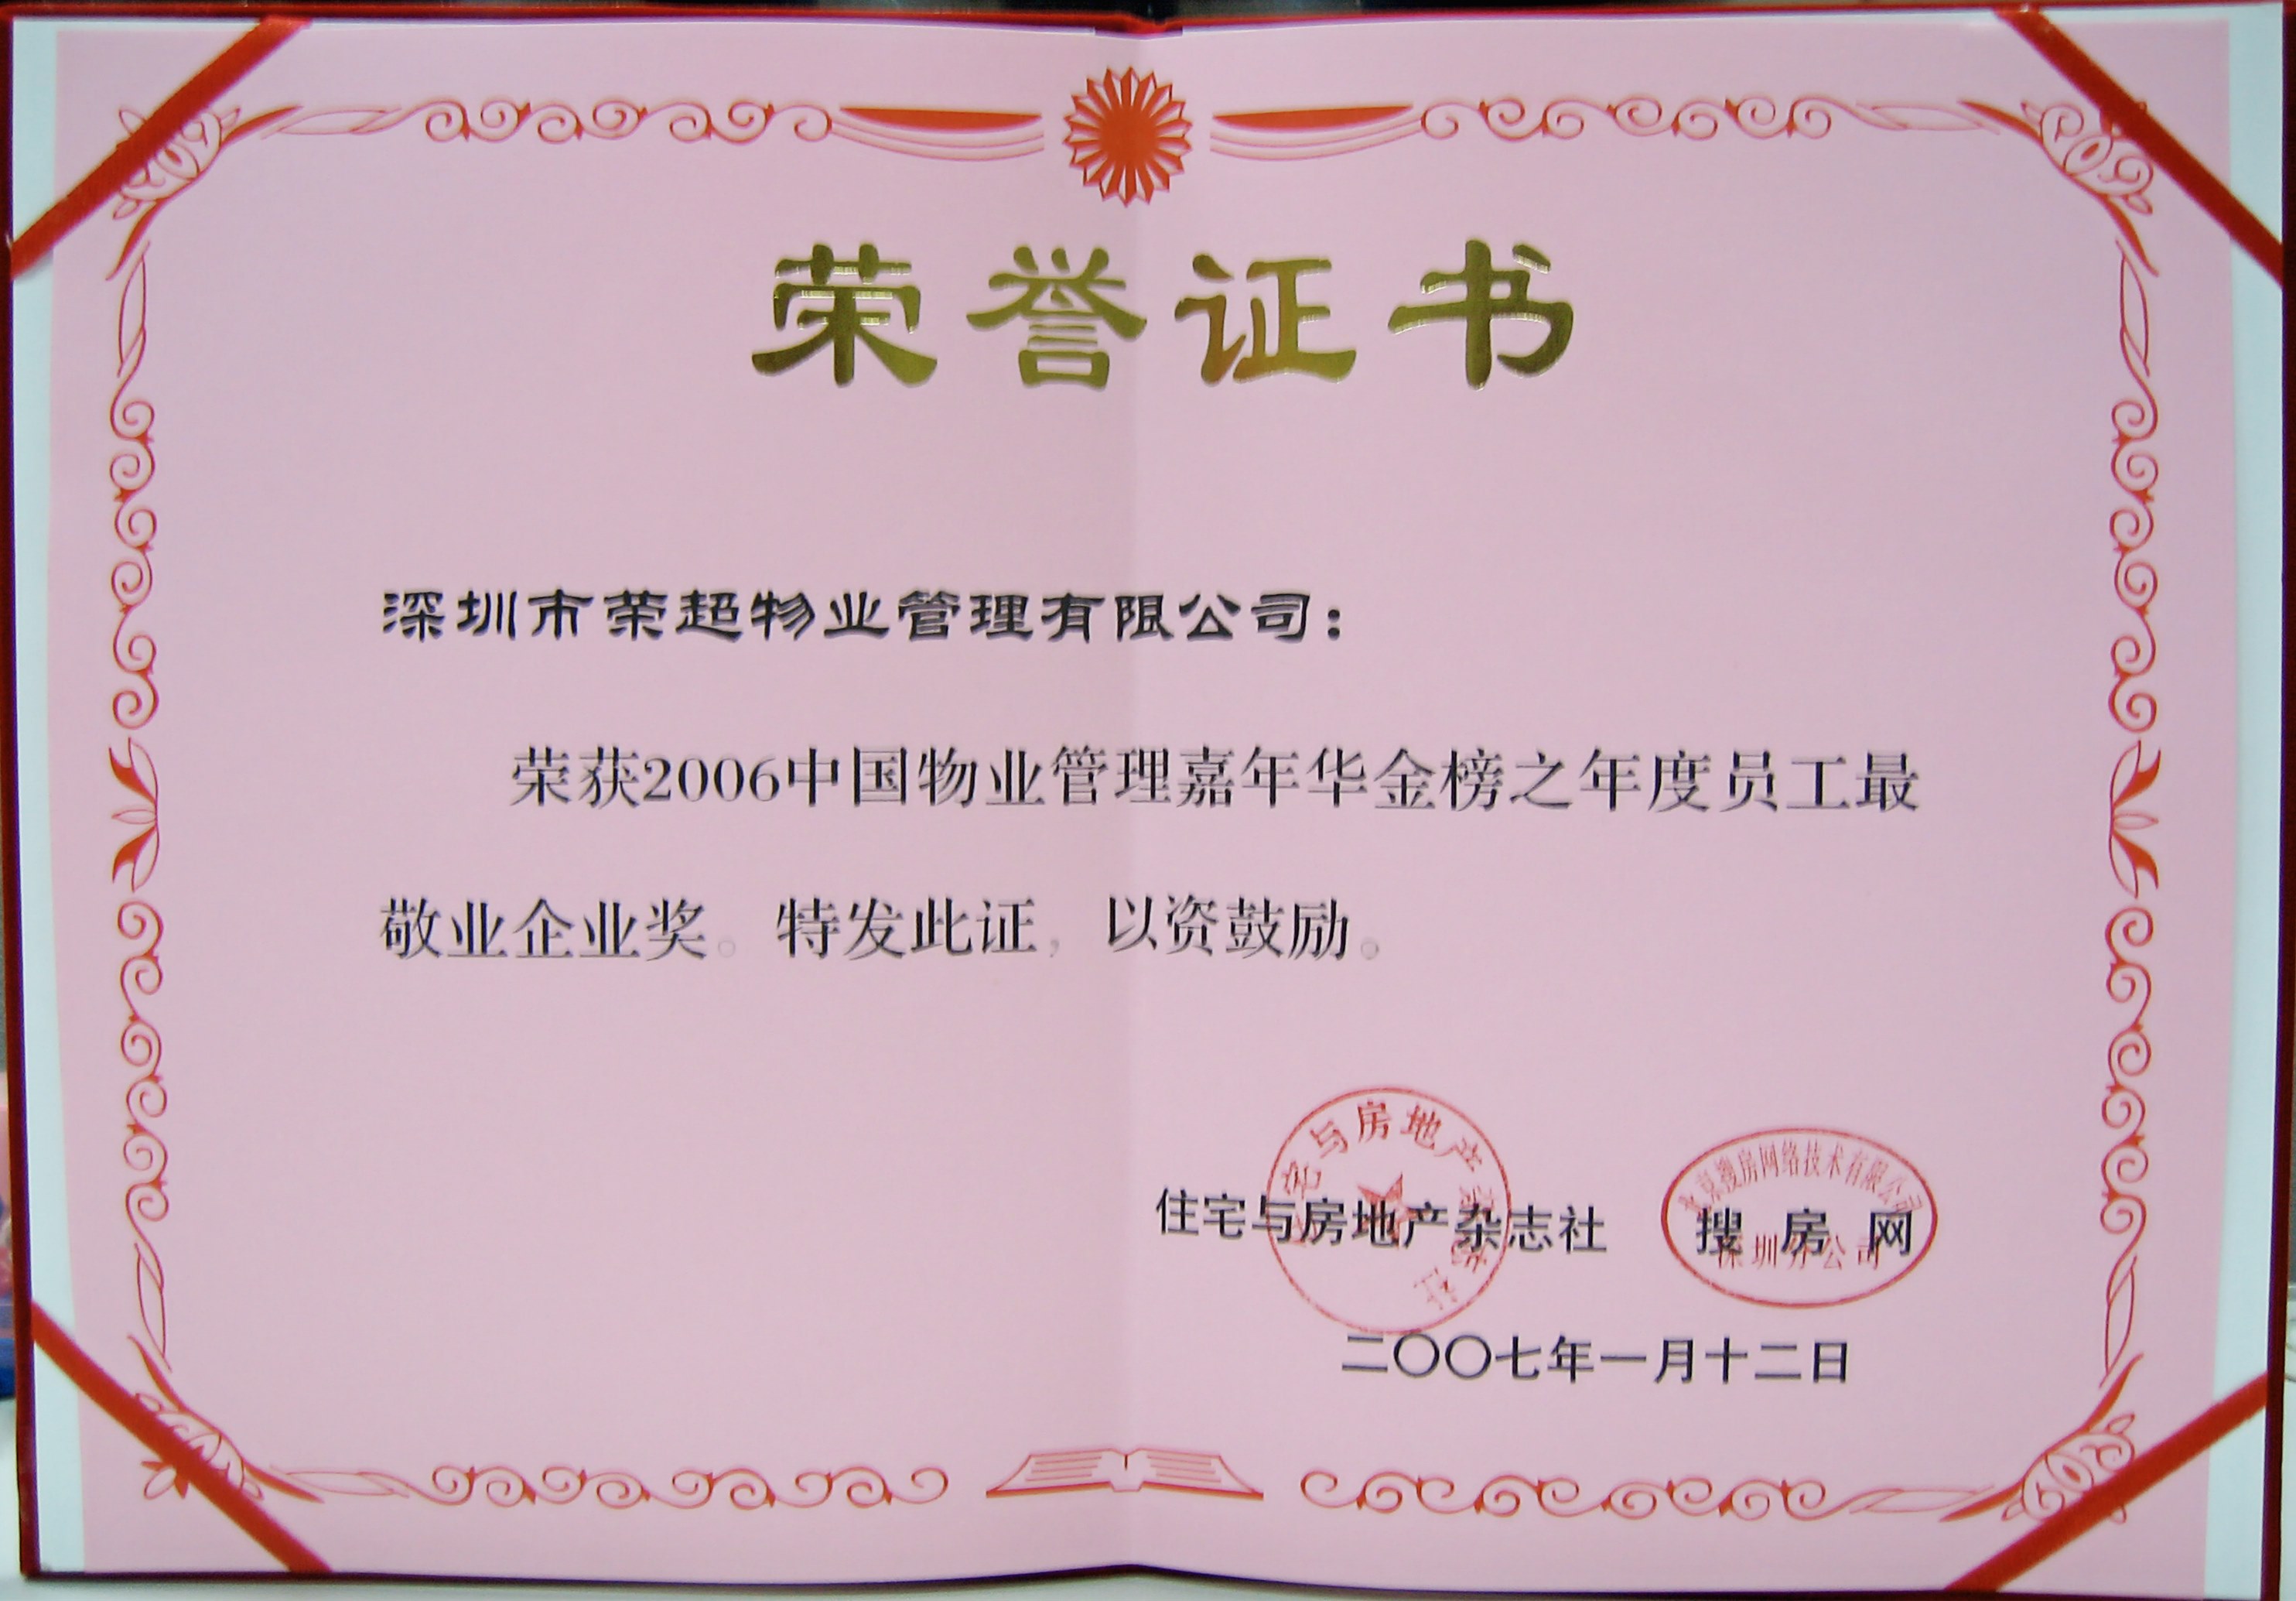 2006年中国物业管理嘉年华金榜之年度员工最敬业企业奖.jpg